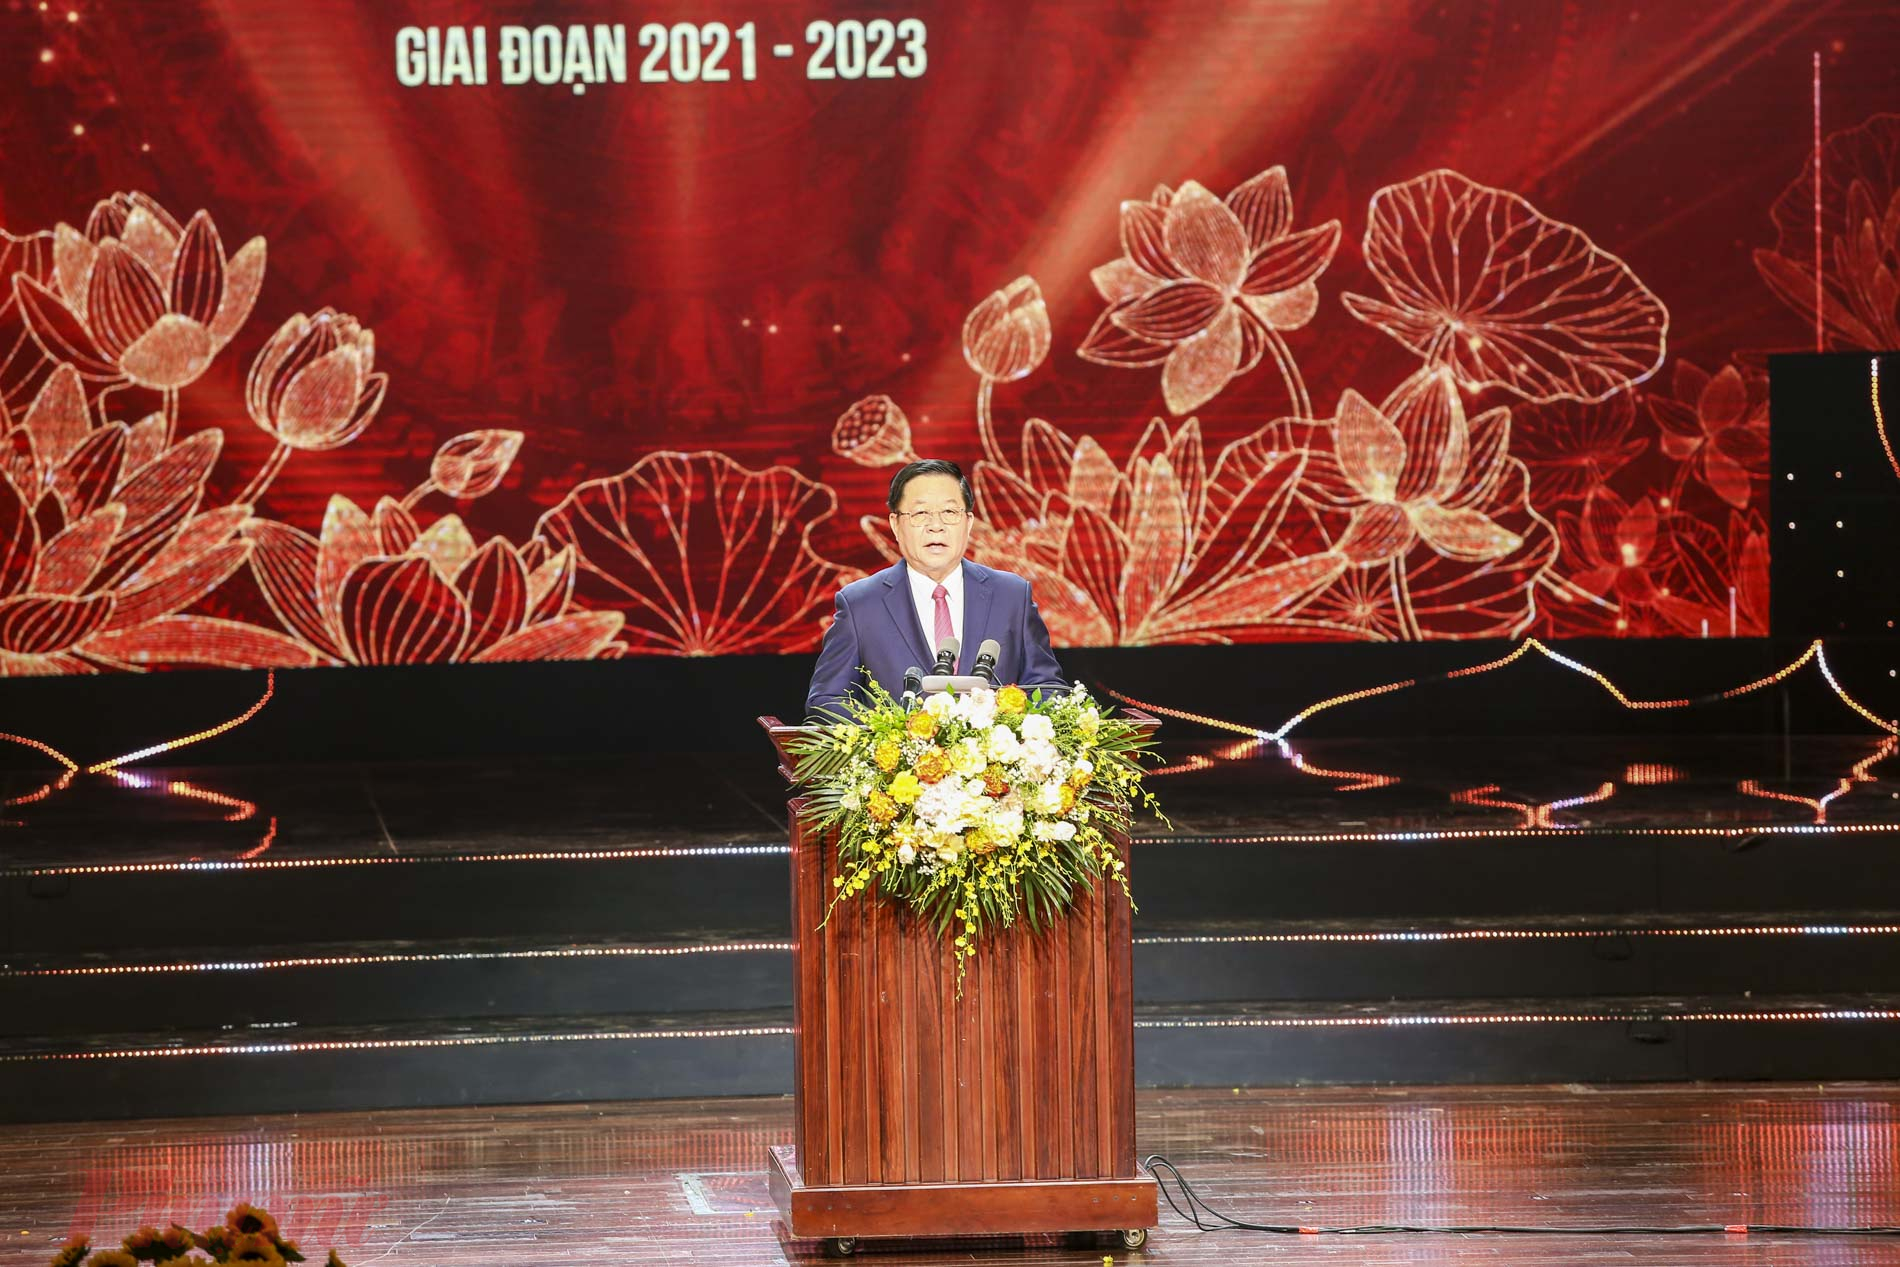 Đồng chí Nguyễn Trọng Nghĩa, Bí thư Trung ương Đảng, Trưởng Ban Tuyên giáo Trung ương phát biểu tại Lễ trao giải.